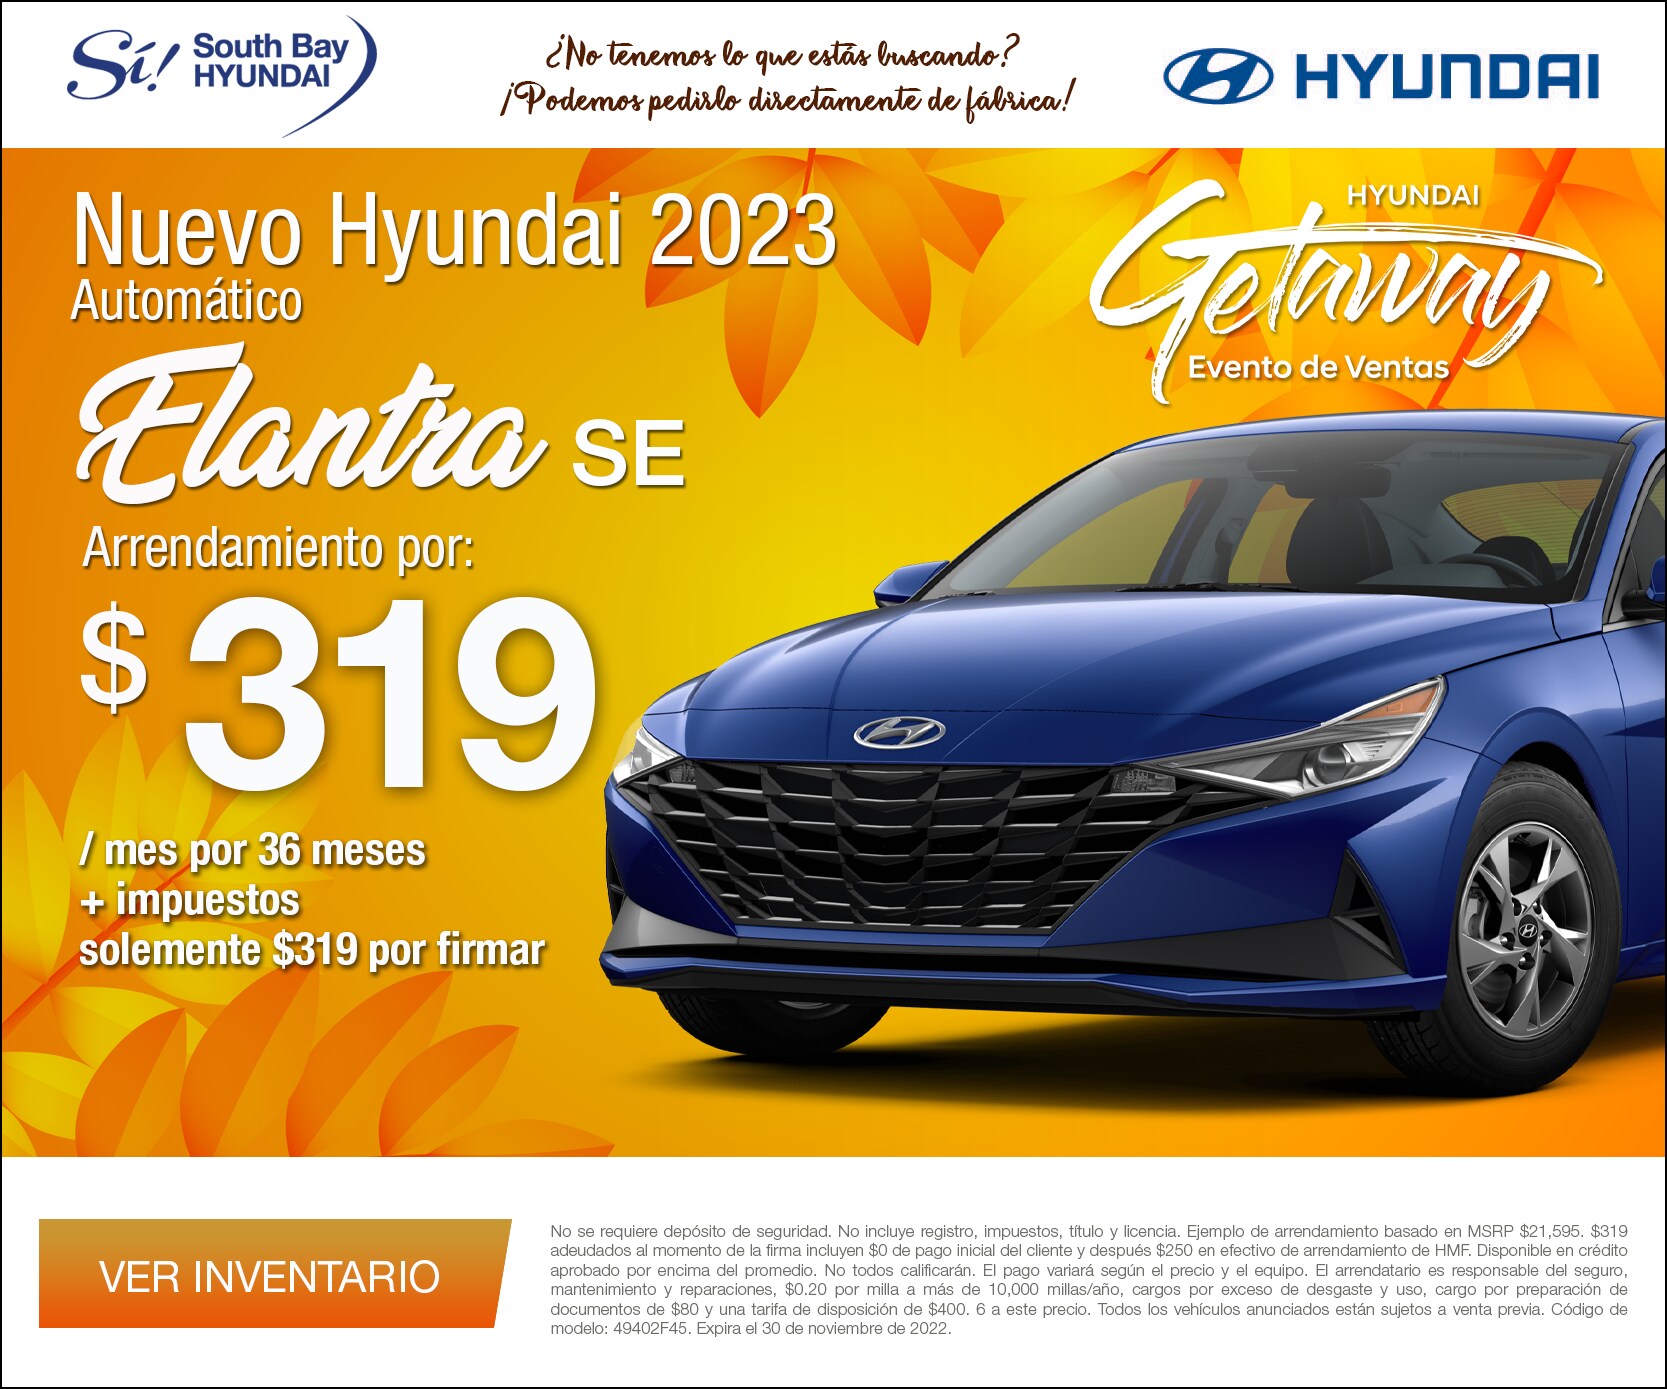 Equipo Sí en South Bay Hyundai. Oferta especial para el nuevo Hyundai Elantra 2023. Hablamos su idioma